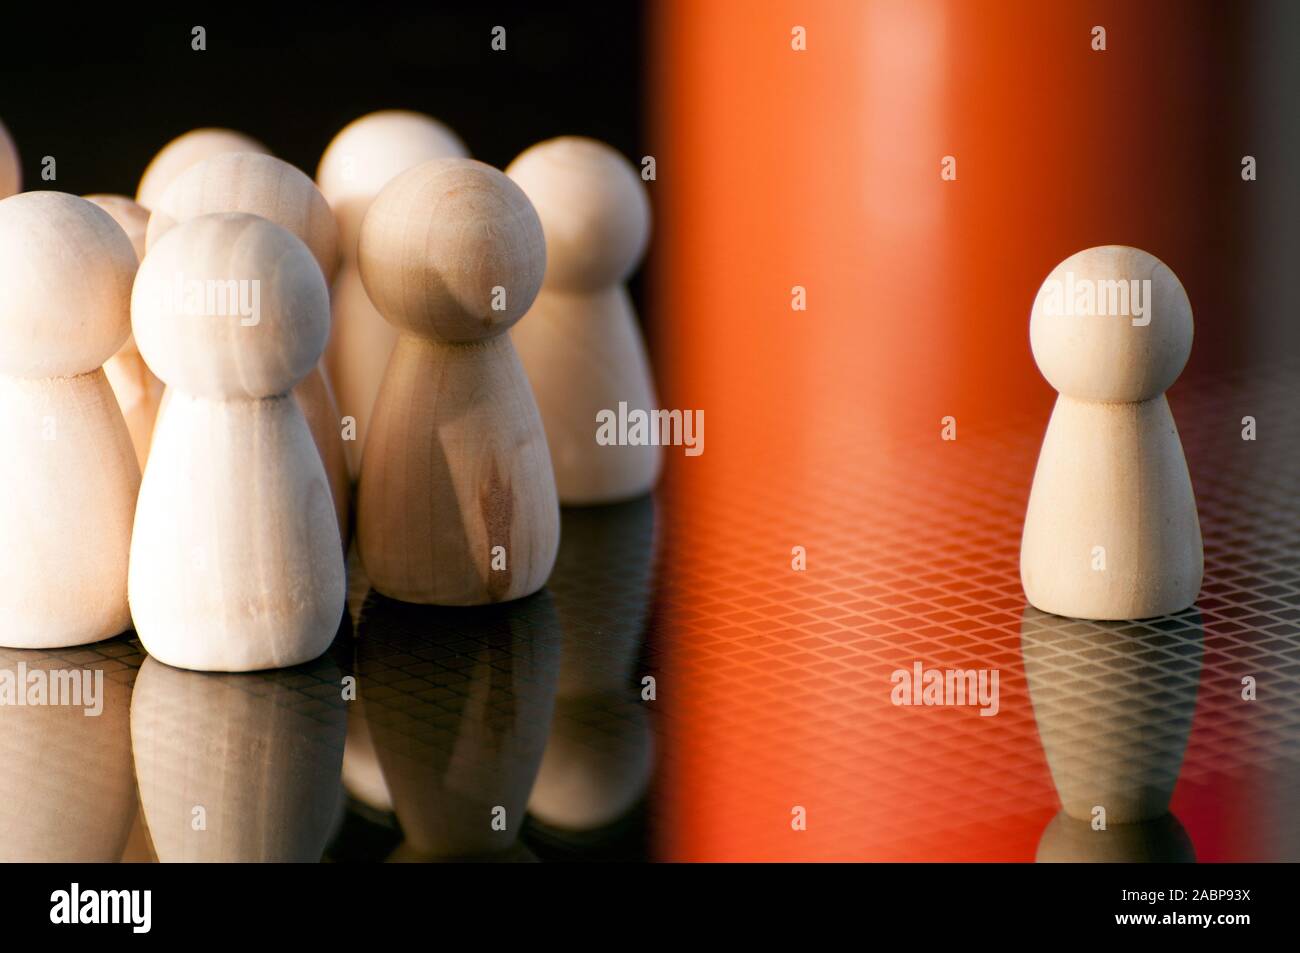 Holz- Schachfiguren ähnlich aber unterschiedlich. Konzept der sozialen Isolation, Mobbing. Allein zu sein, Ausländer und Randgruppen.; Stockfoto